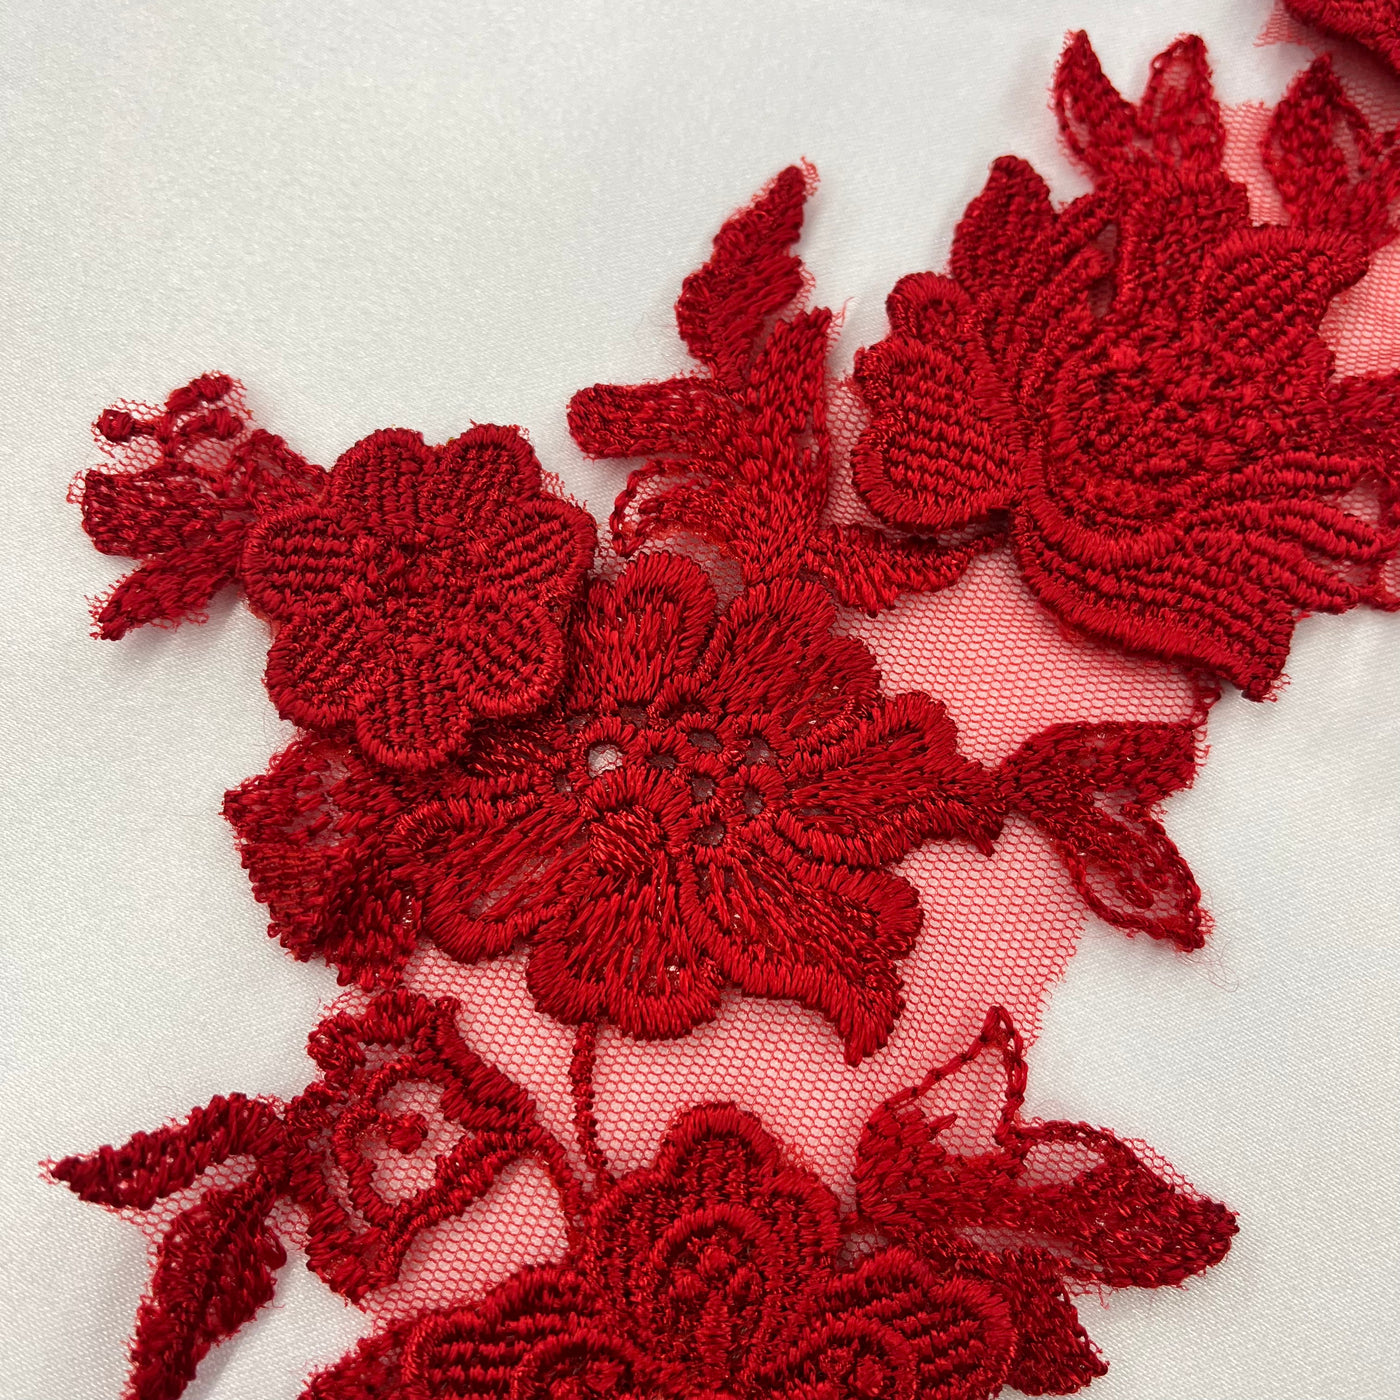 Aplique de encaje floral 3D bordado en malla de red 100% poliéster | Encaje EE. UU.